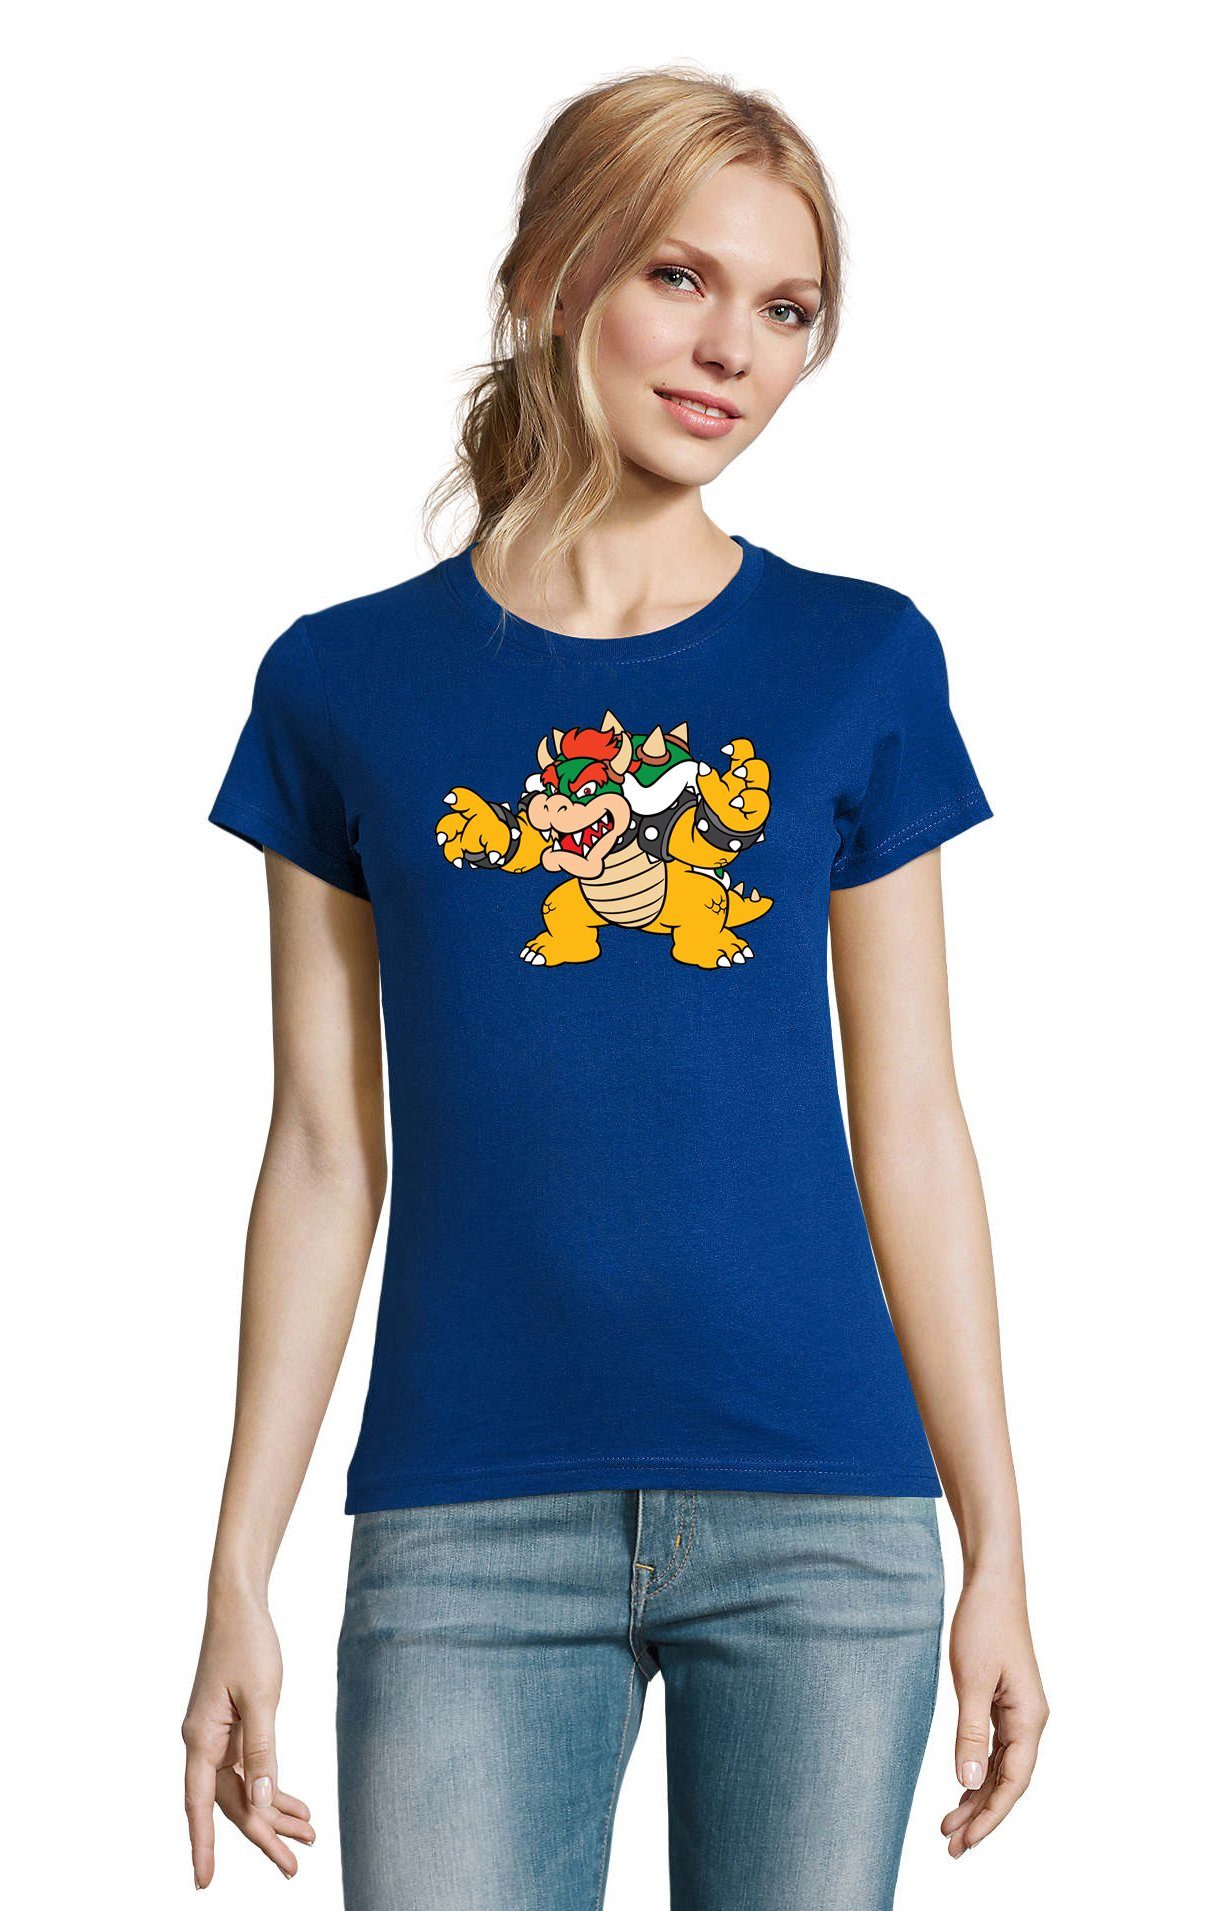 Bowser Luigi & Mario Damen Brownie Gamer Blau Game Nintendo T-Shirt Yoshi Konsole Gaming Blondie